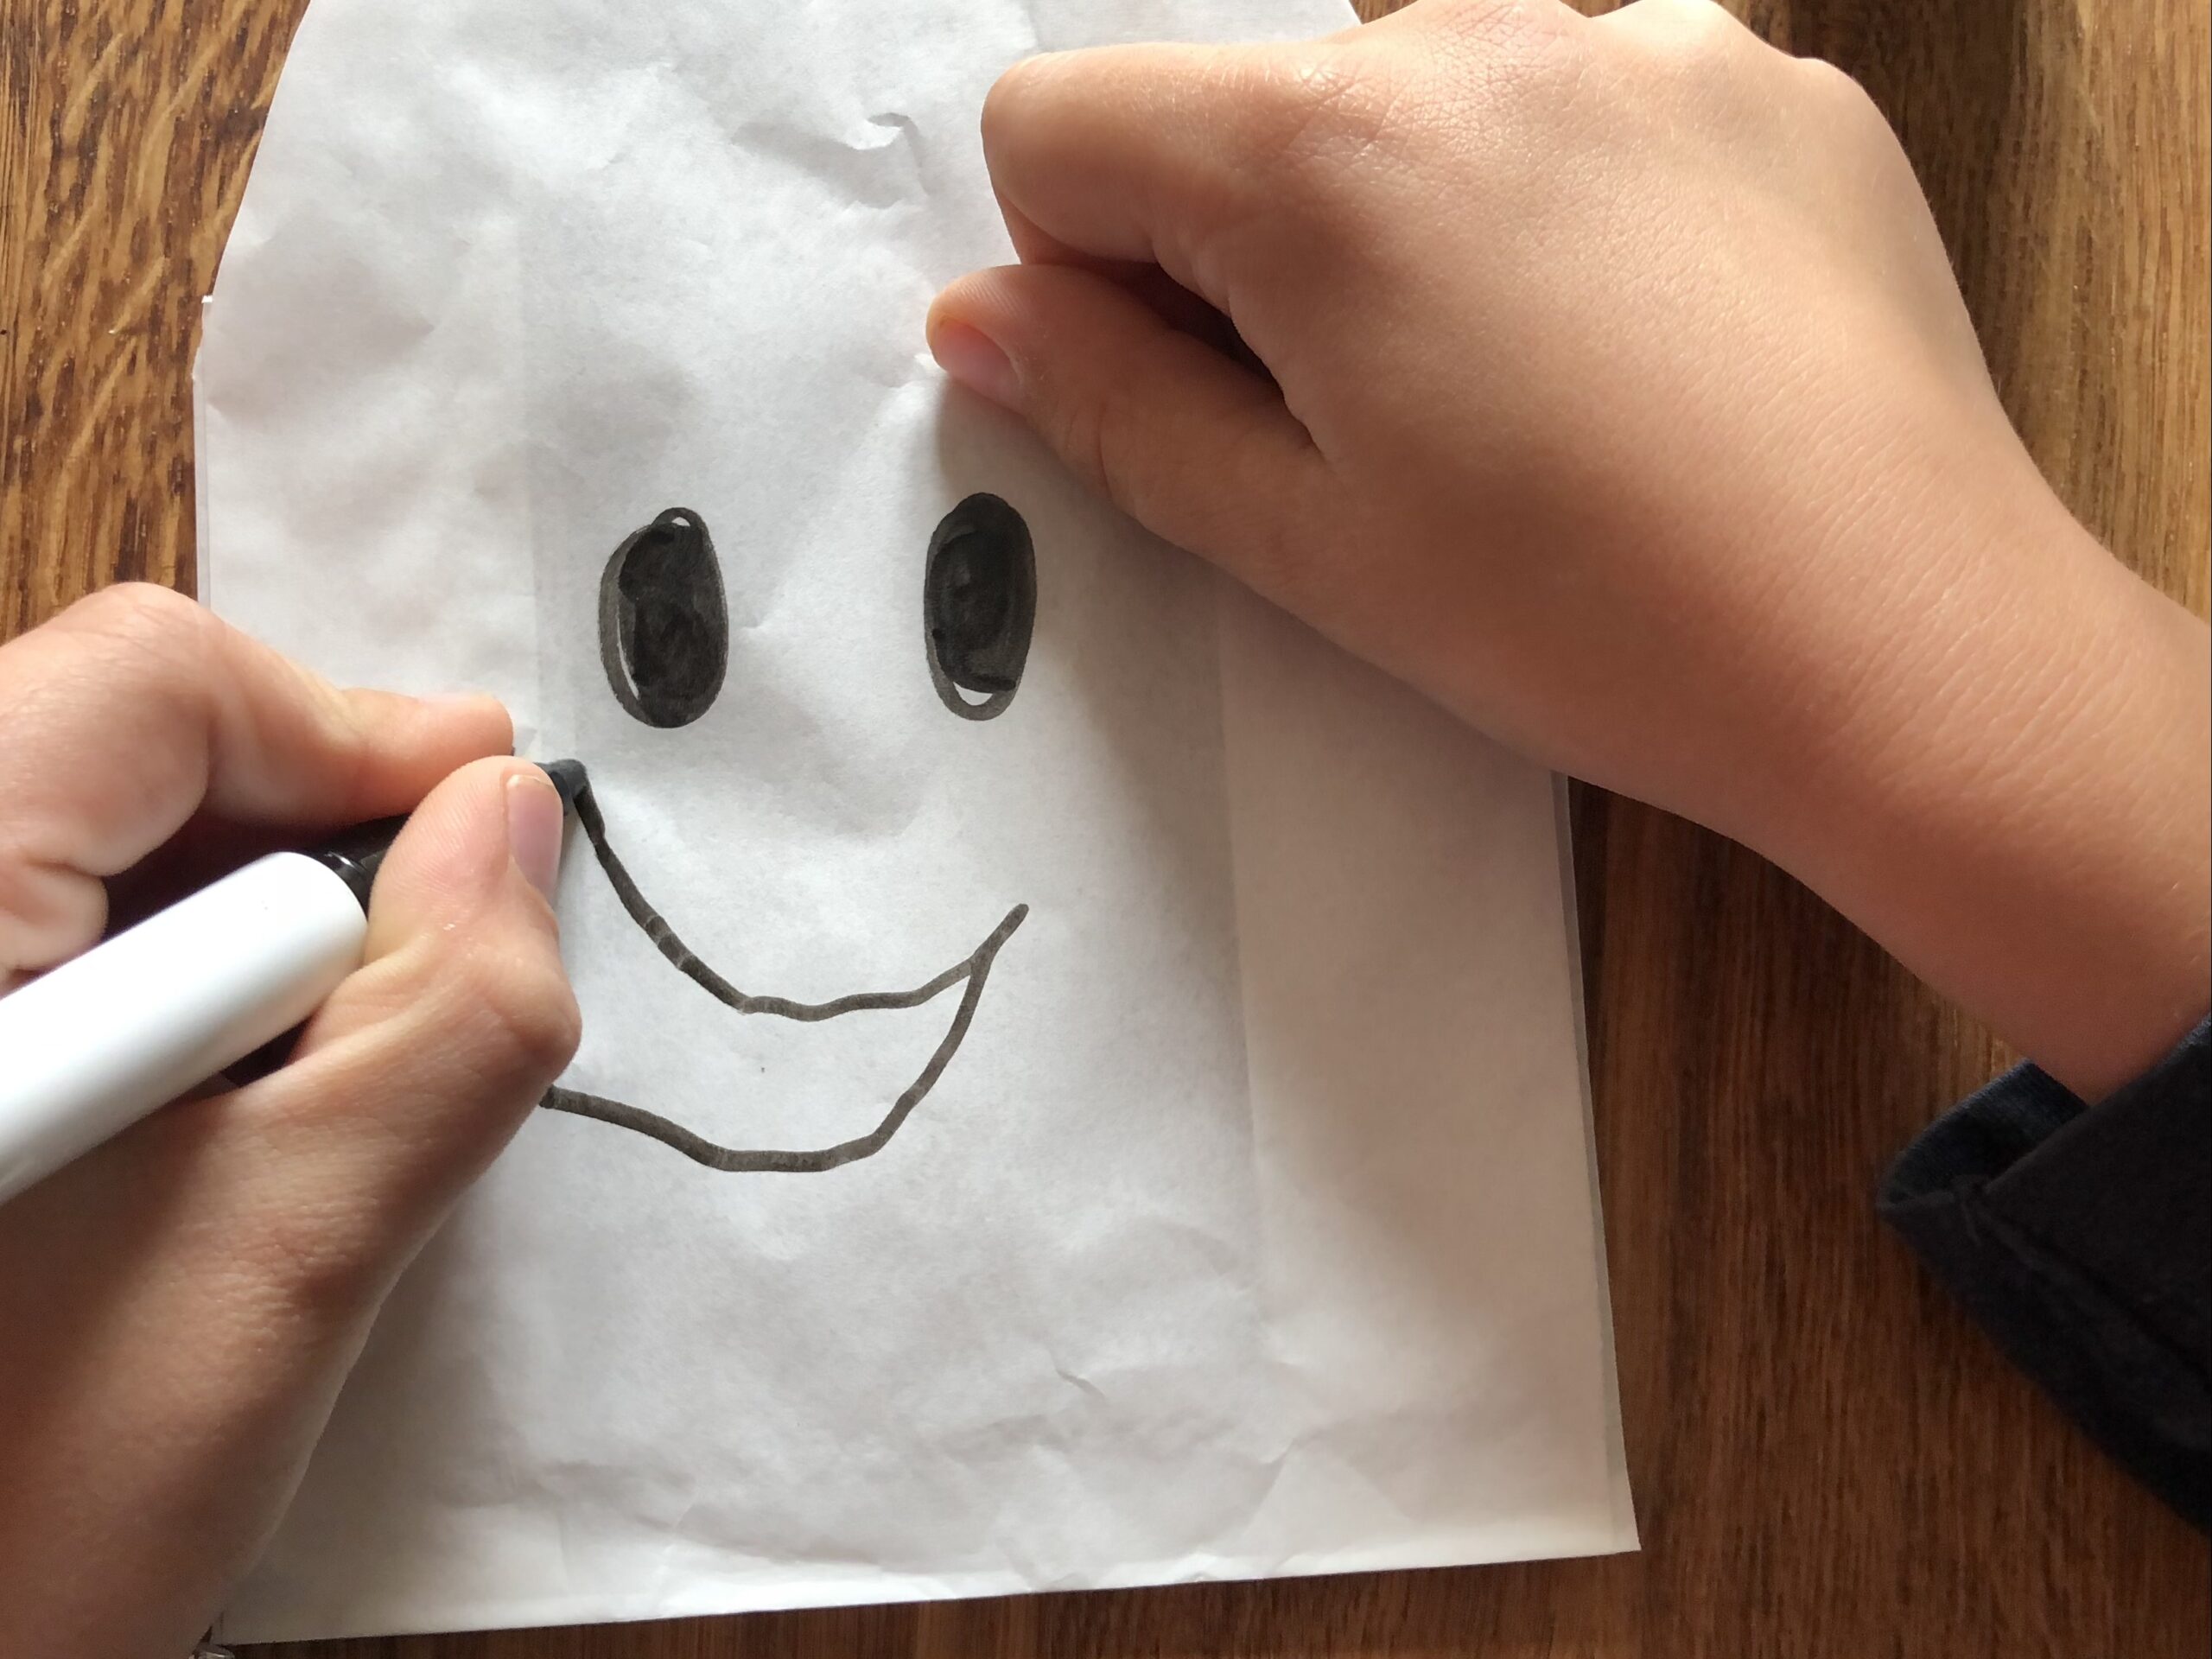 Bild zum Schritt 6 für das Bastel- und DIY-Abenteuer für Kinder: 'Jetzt malt ihr ein Gesicht auf die Tüten. So entstehen...'